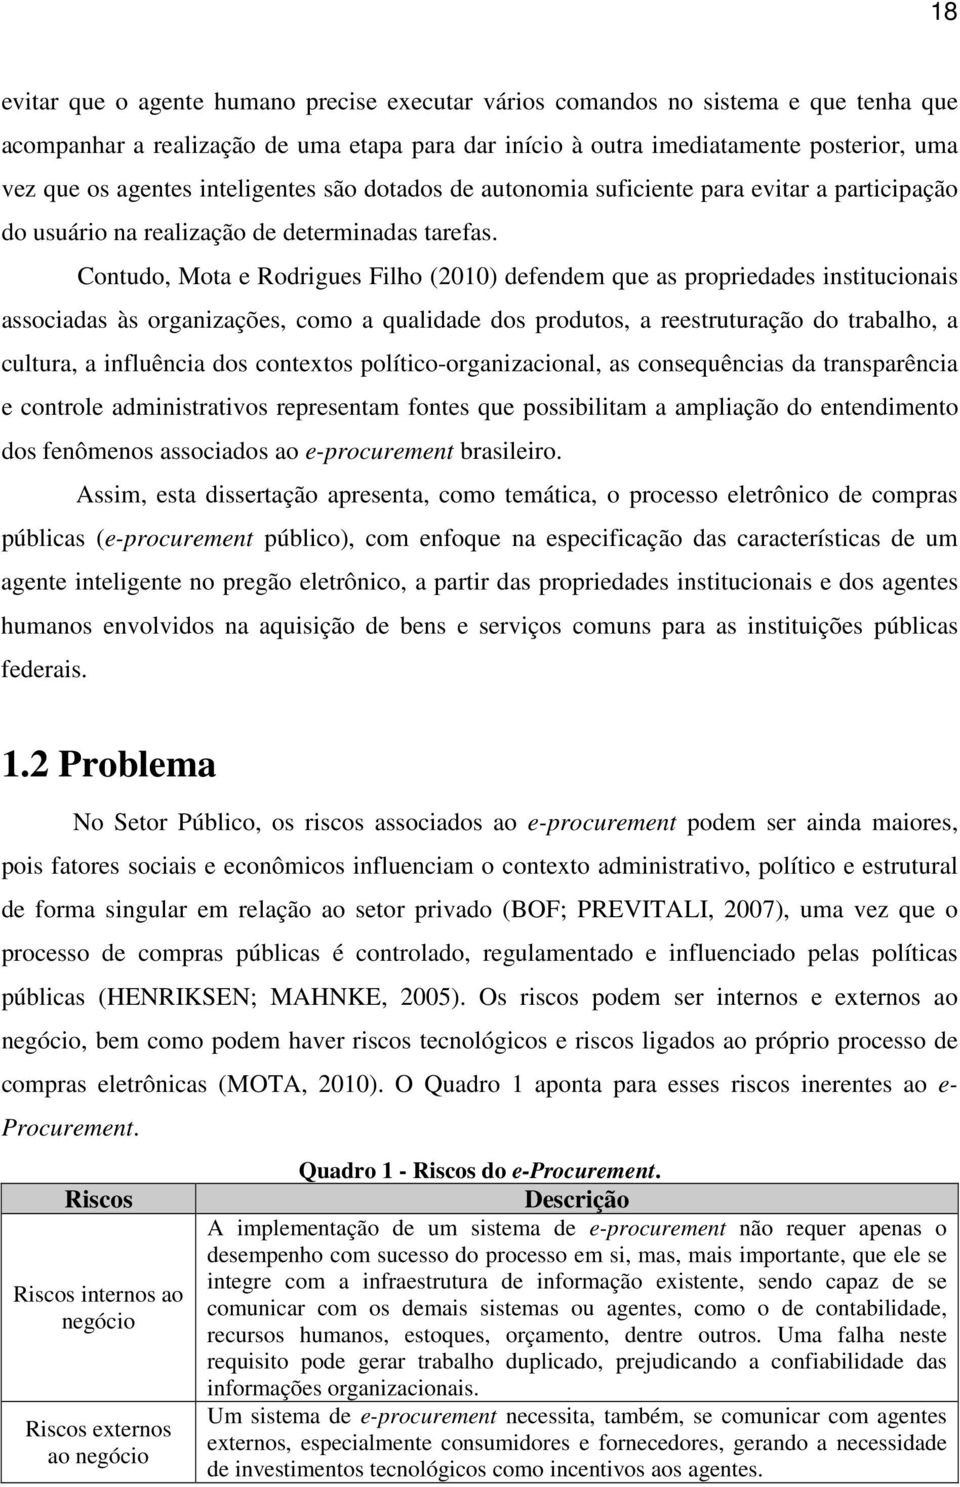 Contudo, Mota e Rodrigues Filho (2010) defendem que as propriedades institucionais associadas às organizações, como a qualidade dos produtos, a reestruturação do trabalho, a cultura, a influência dos